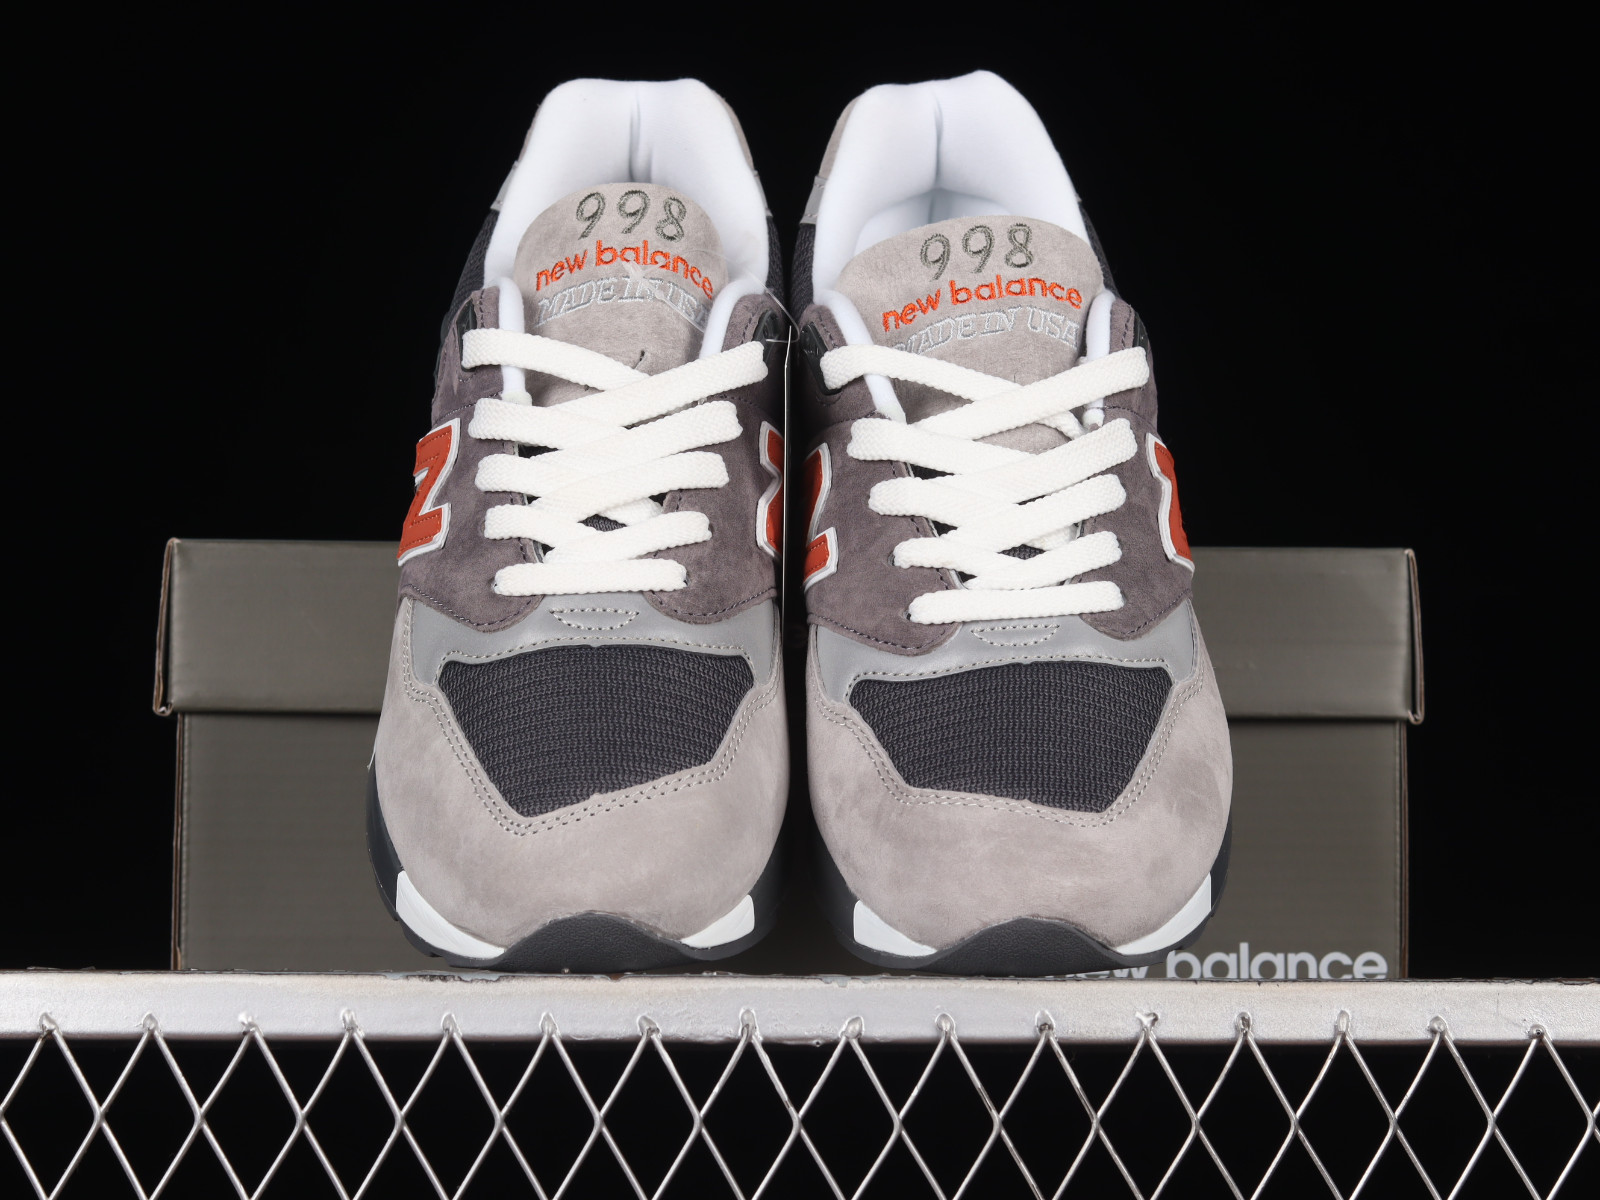 Formular Jirafa Ajustarse New Balance 998 Grey Orange M998GGO - MultiscaleconsultingShops